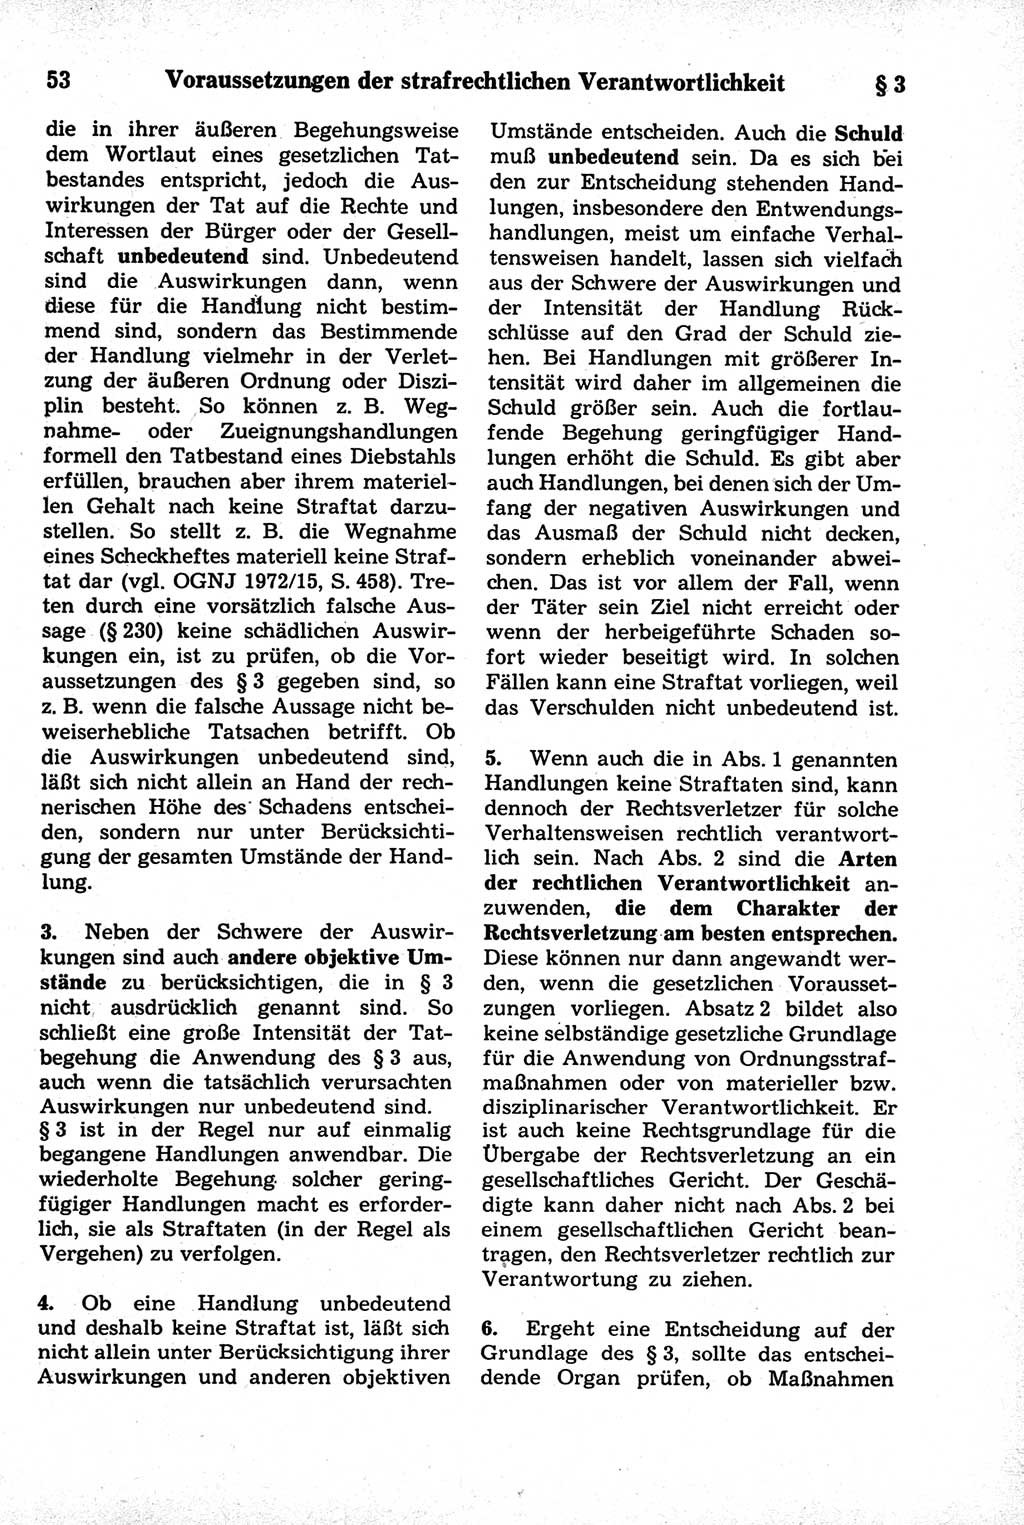 Strafrecht der Deutschen Demokratischen Republik (DDR), Kommentar zum Strafgesetzbuch (StGB) 1981, Seite 53 (Strafr. DDR Komm. StGB 1981, S. 53)